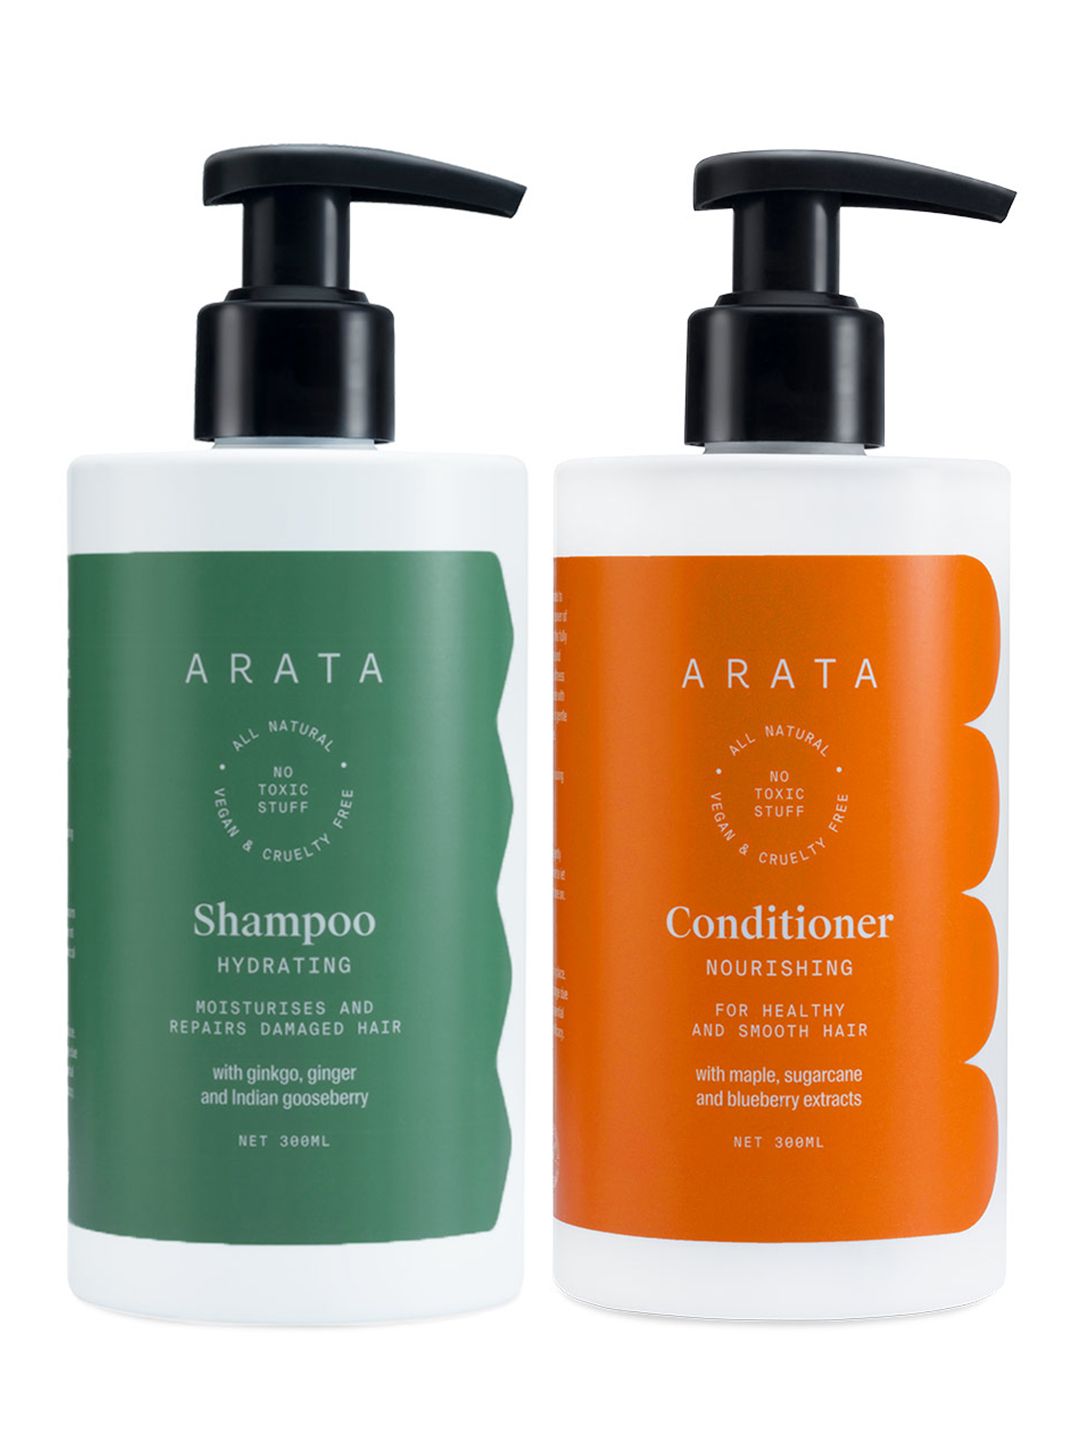 ARATA Unisex Natural Damage Repair Shampoo & Conditioner 300ml each Price in India